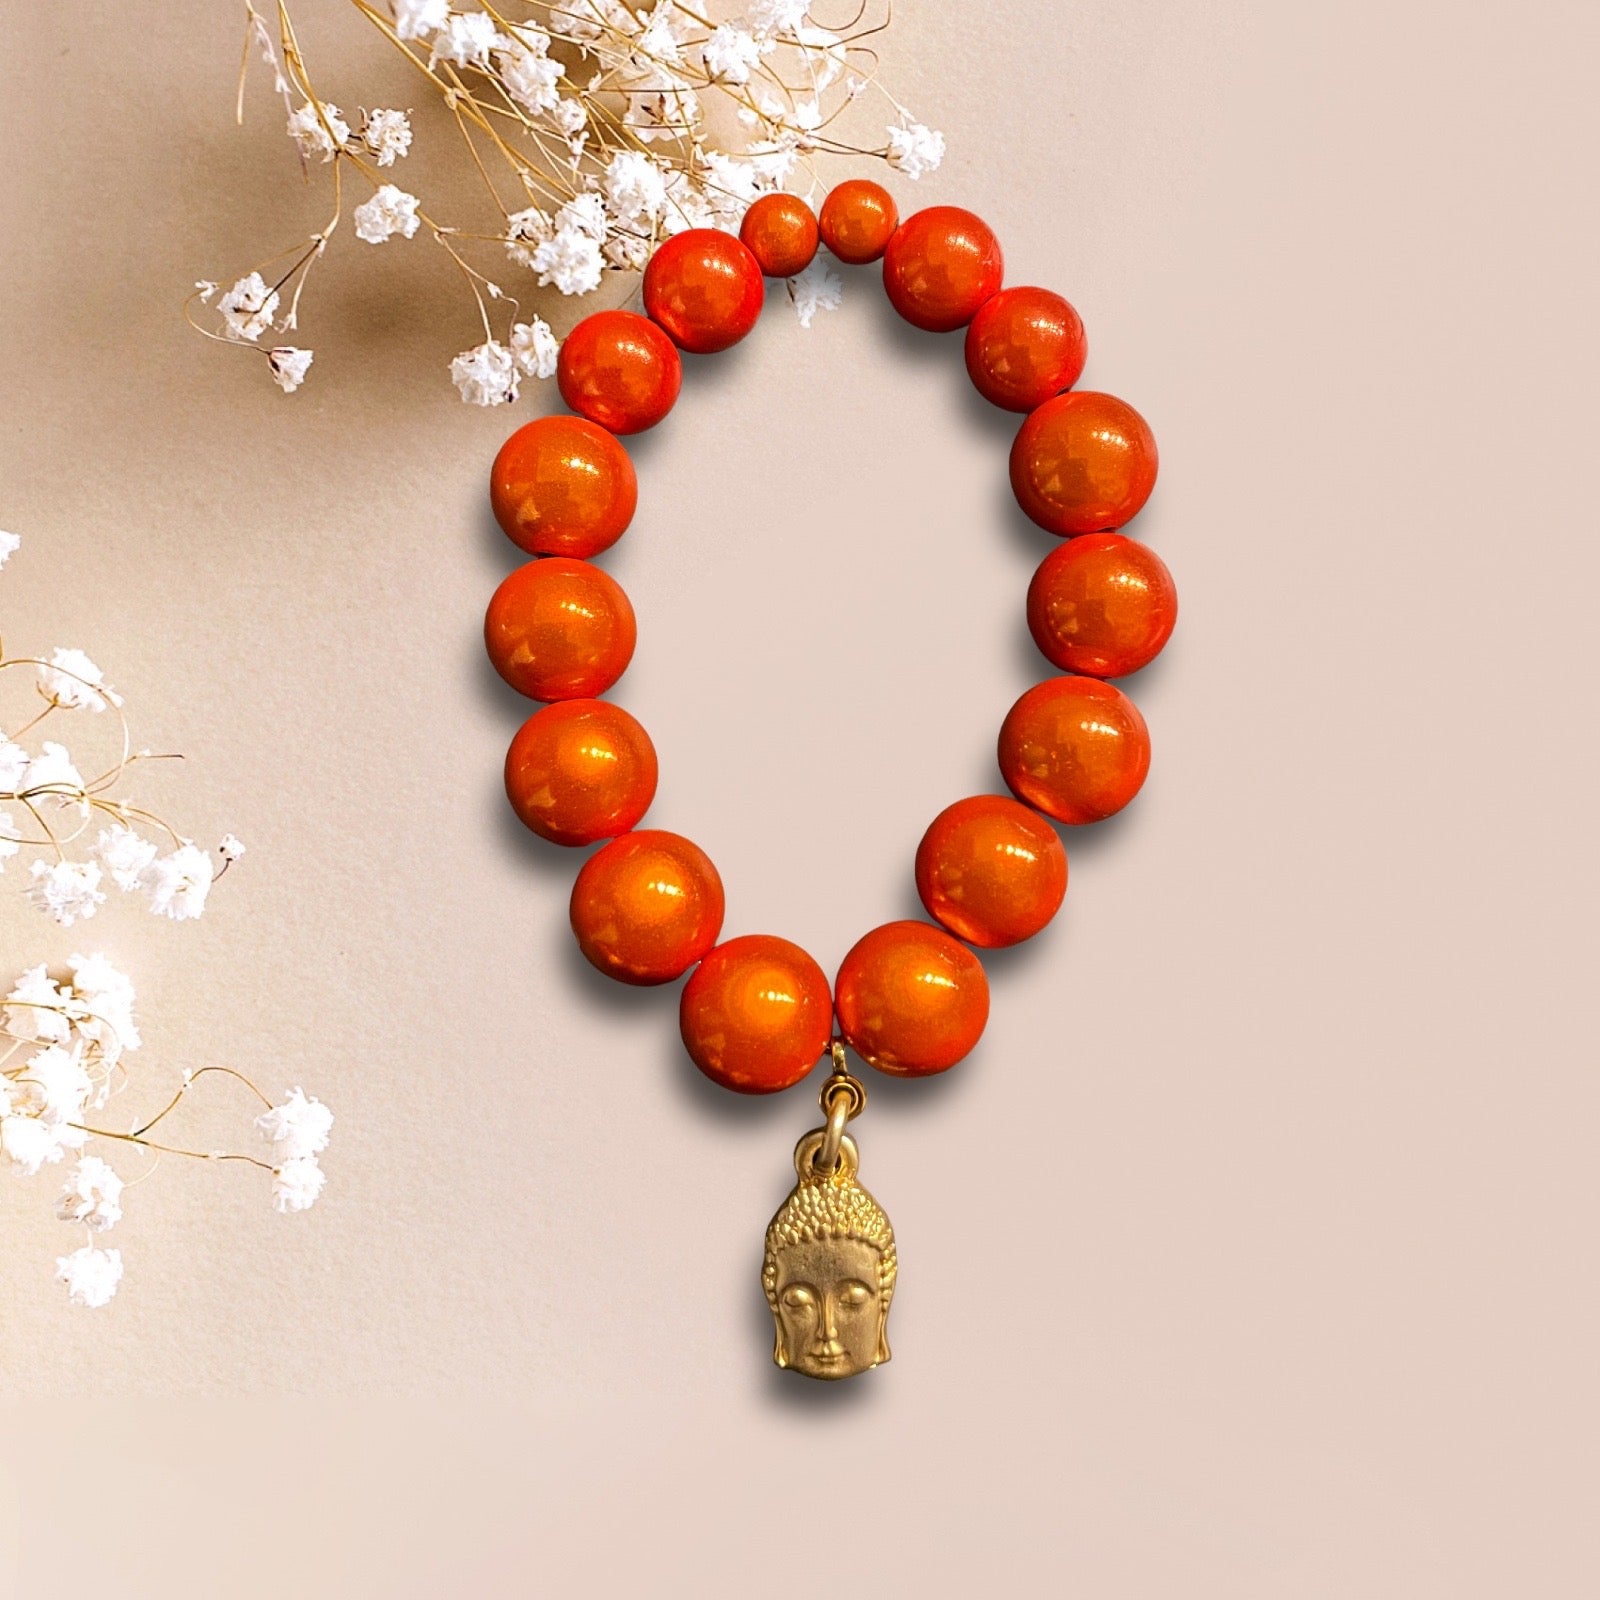 Armband aus großen Miracle Perlen in orange mit einem Anhänger Buddha